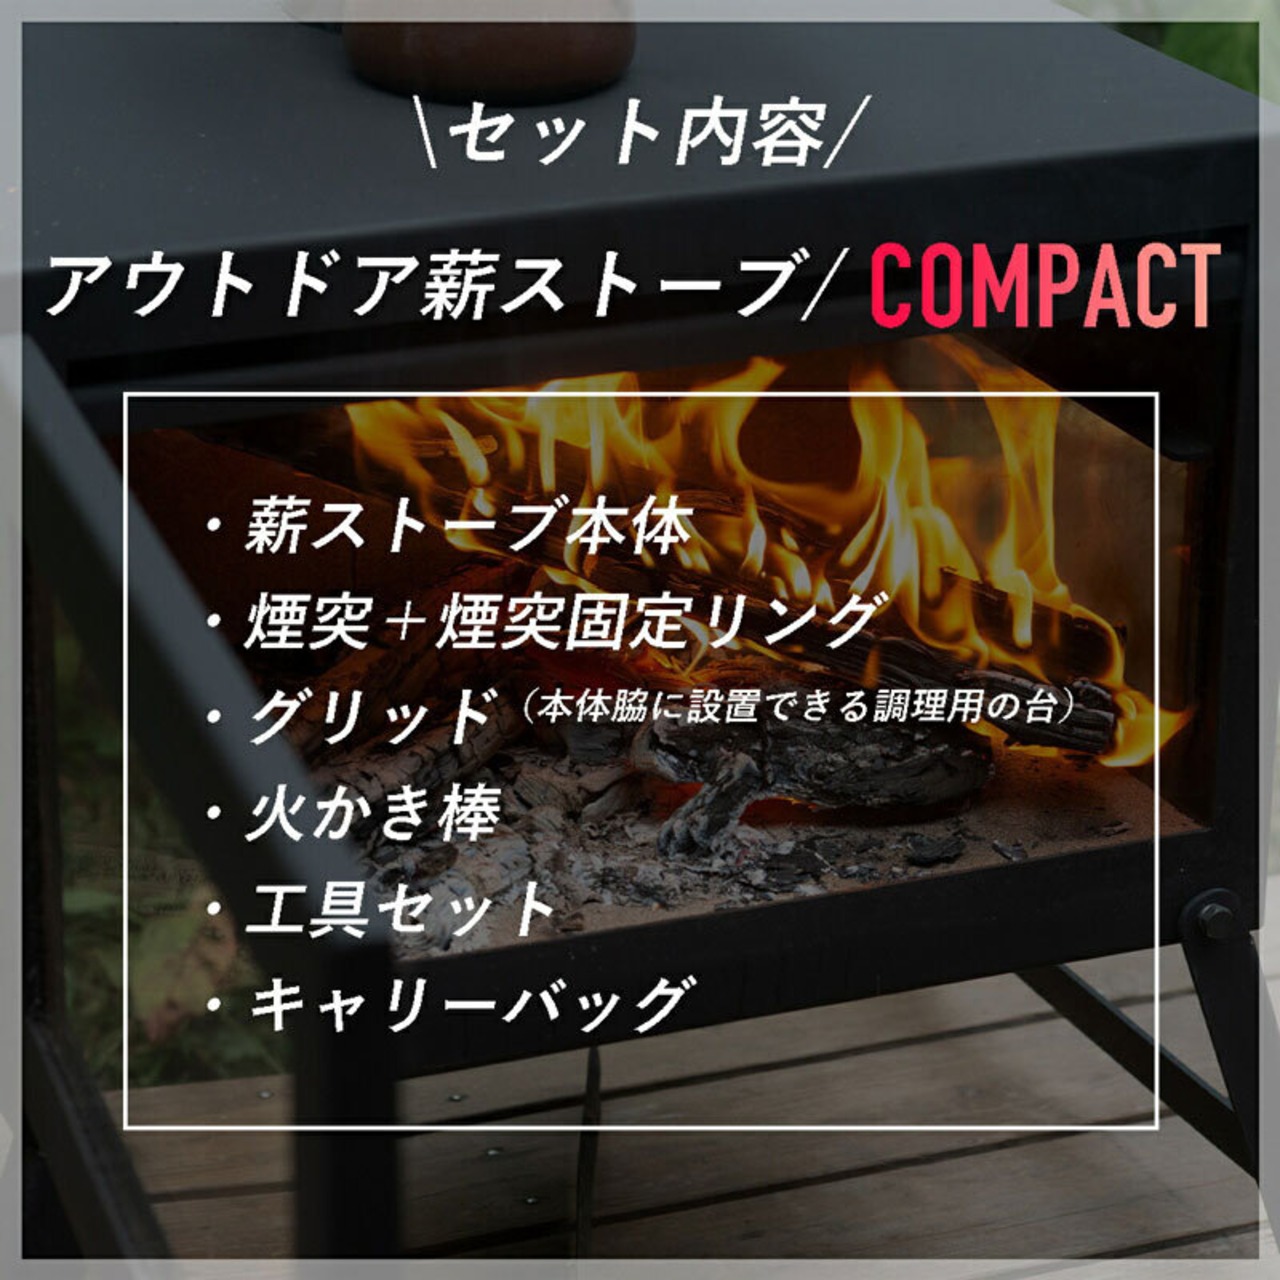 Mt.SUMI(マウント・スミ) Locomo(ロコモ)アウトドア薪ストーブ/COMPACT コンパクト ヒーター